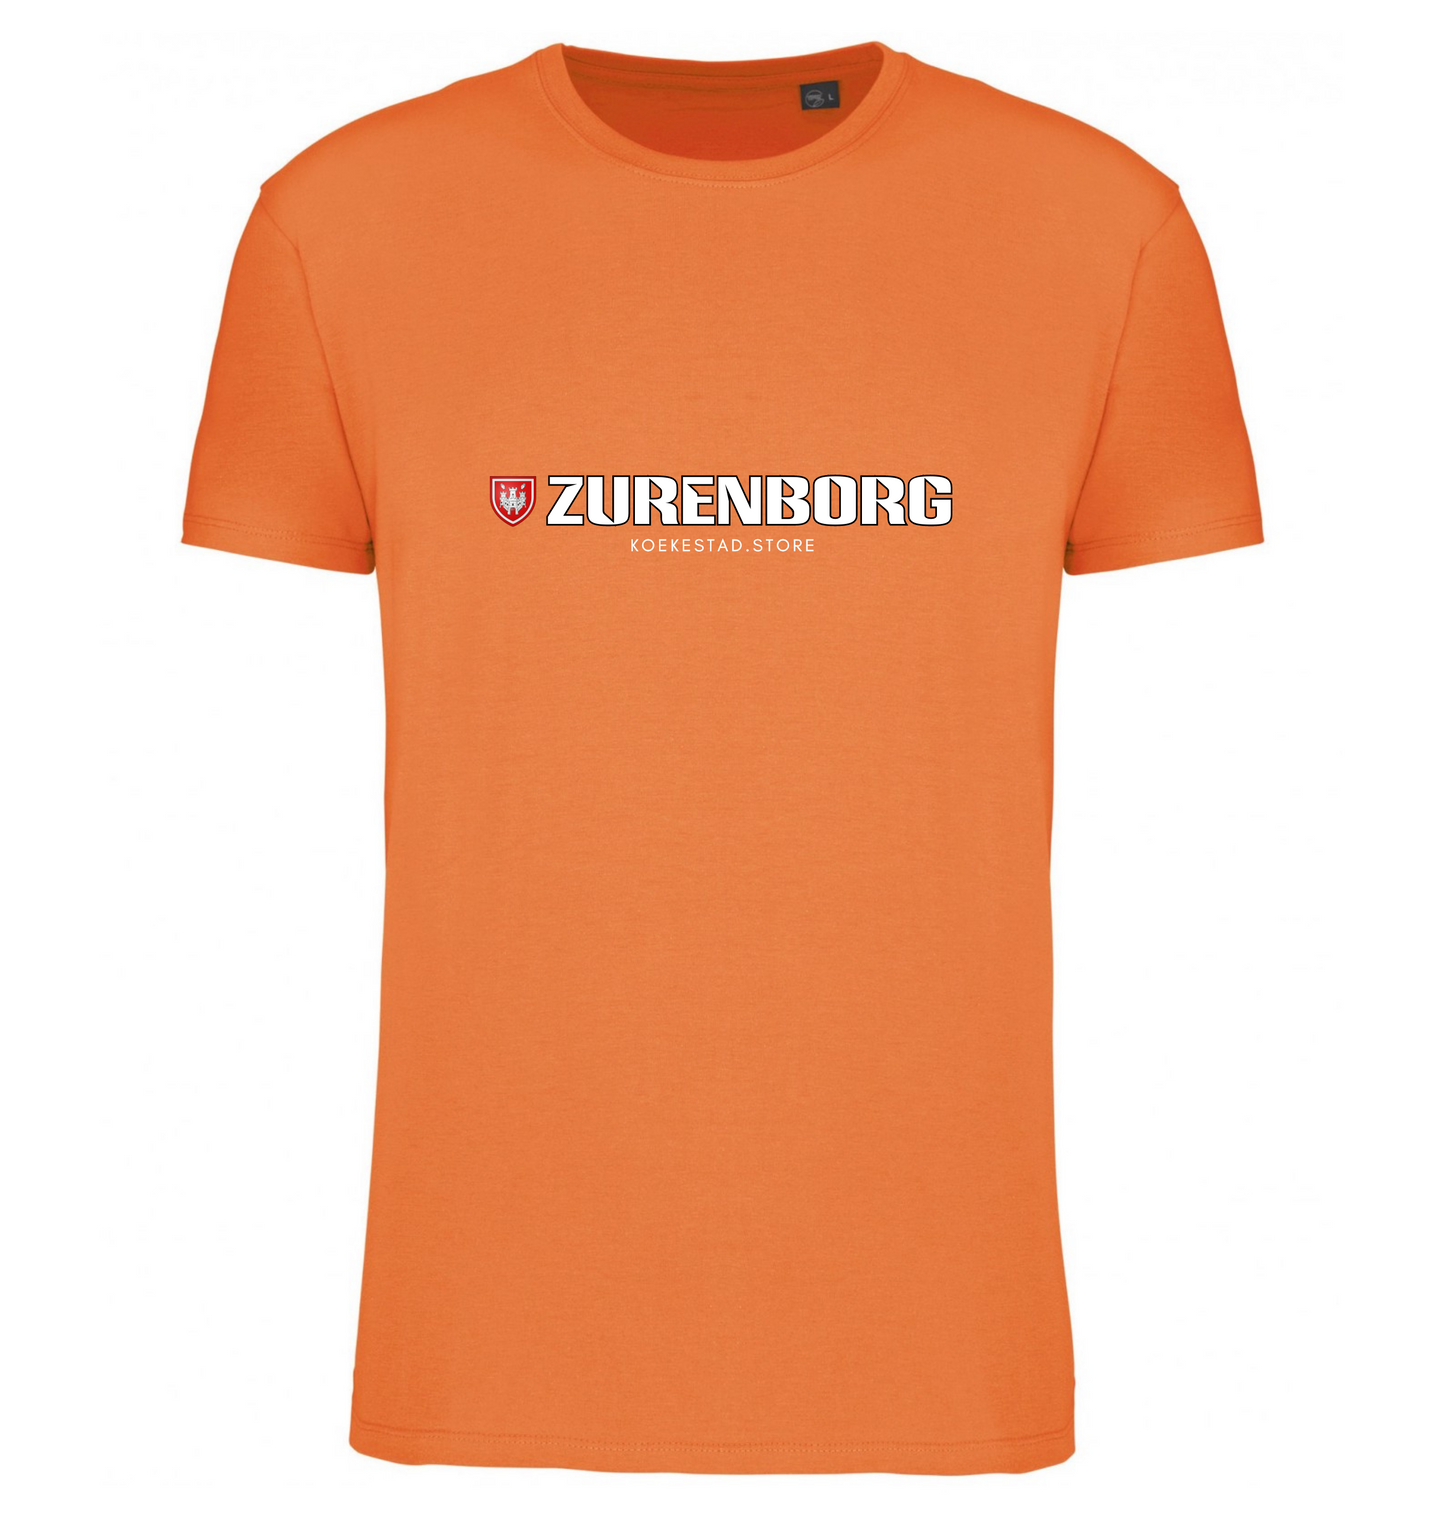 Premium T-Shirt - Zurenborg wijk - 100 % Biokatoen Unisex